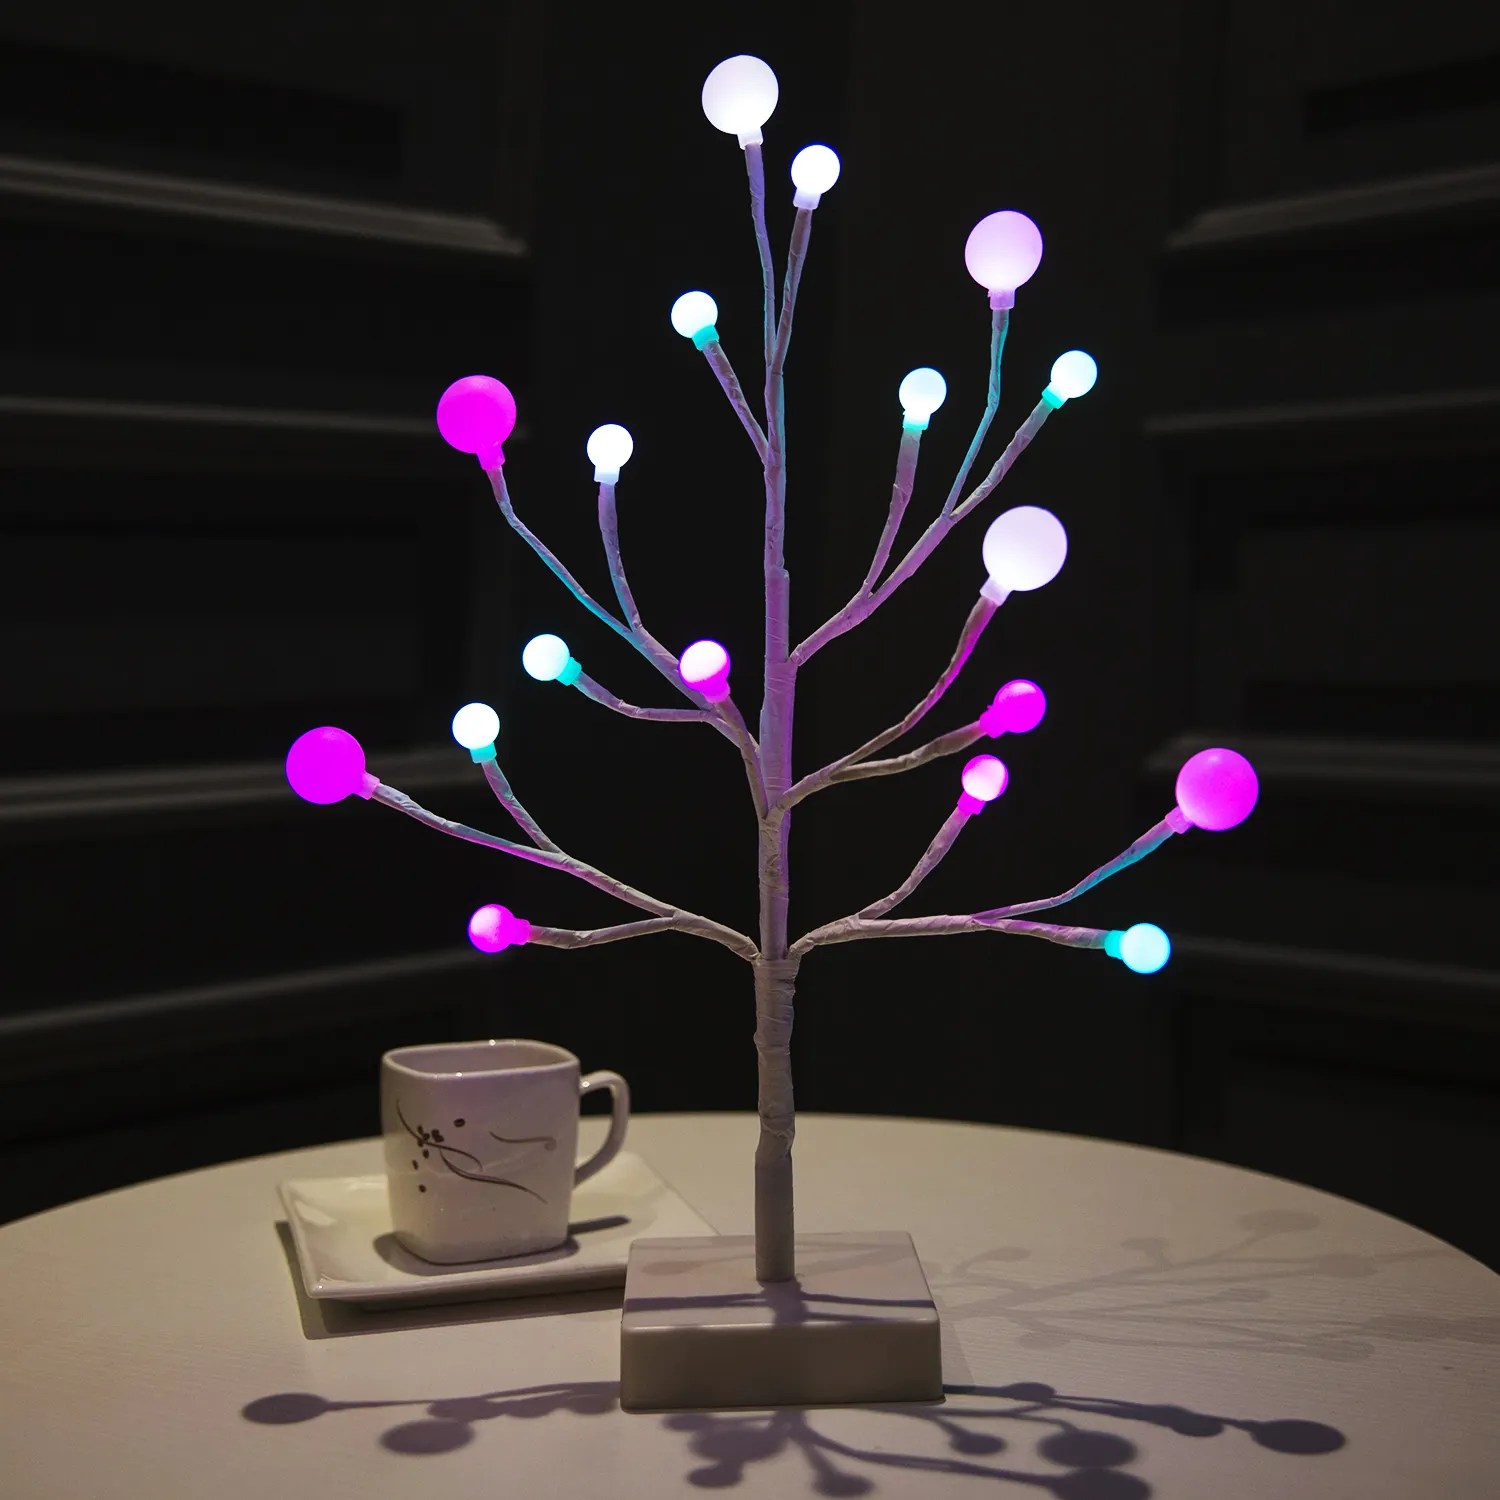 Nuova luce dell'albero 18led alimentata a batteria per l'illuminazione della decorazione di nozze del partito o la luce dell'albero di natale di festa